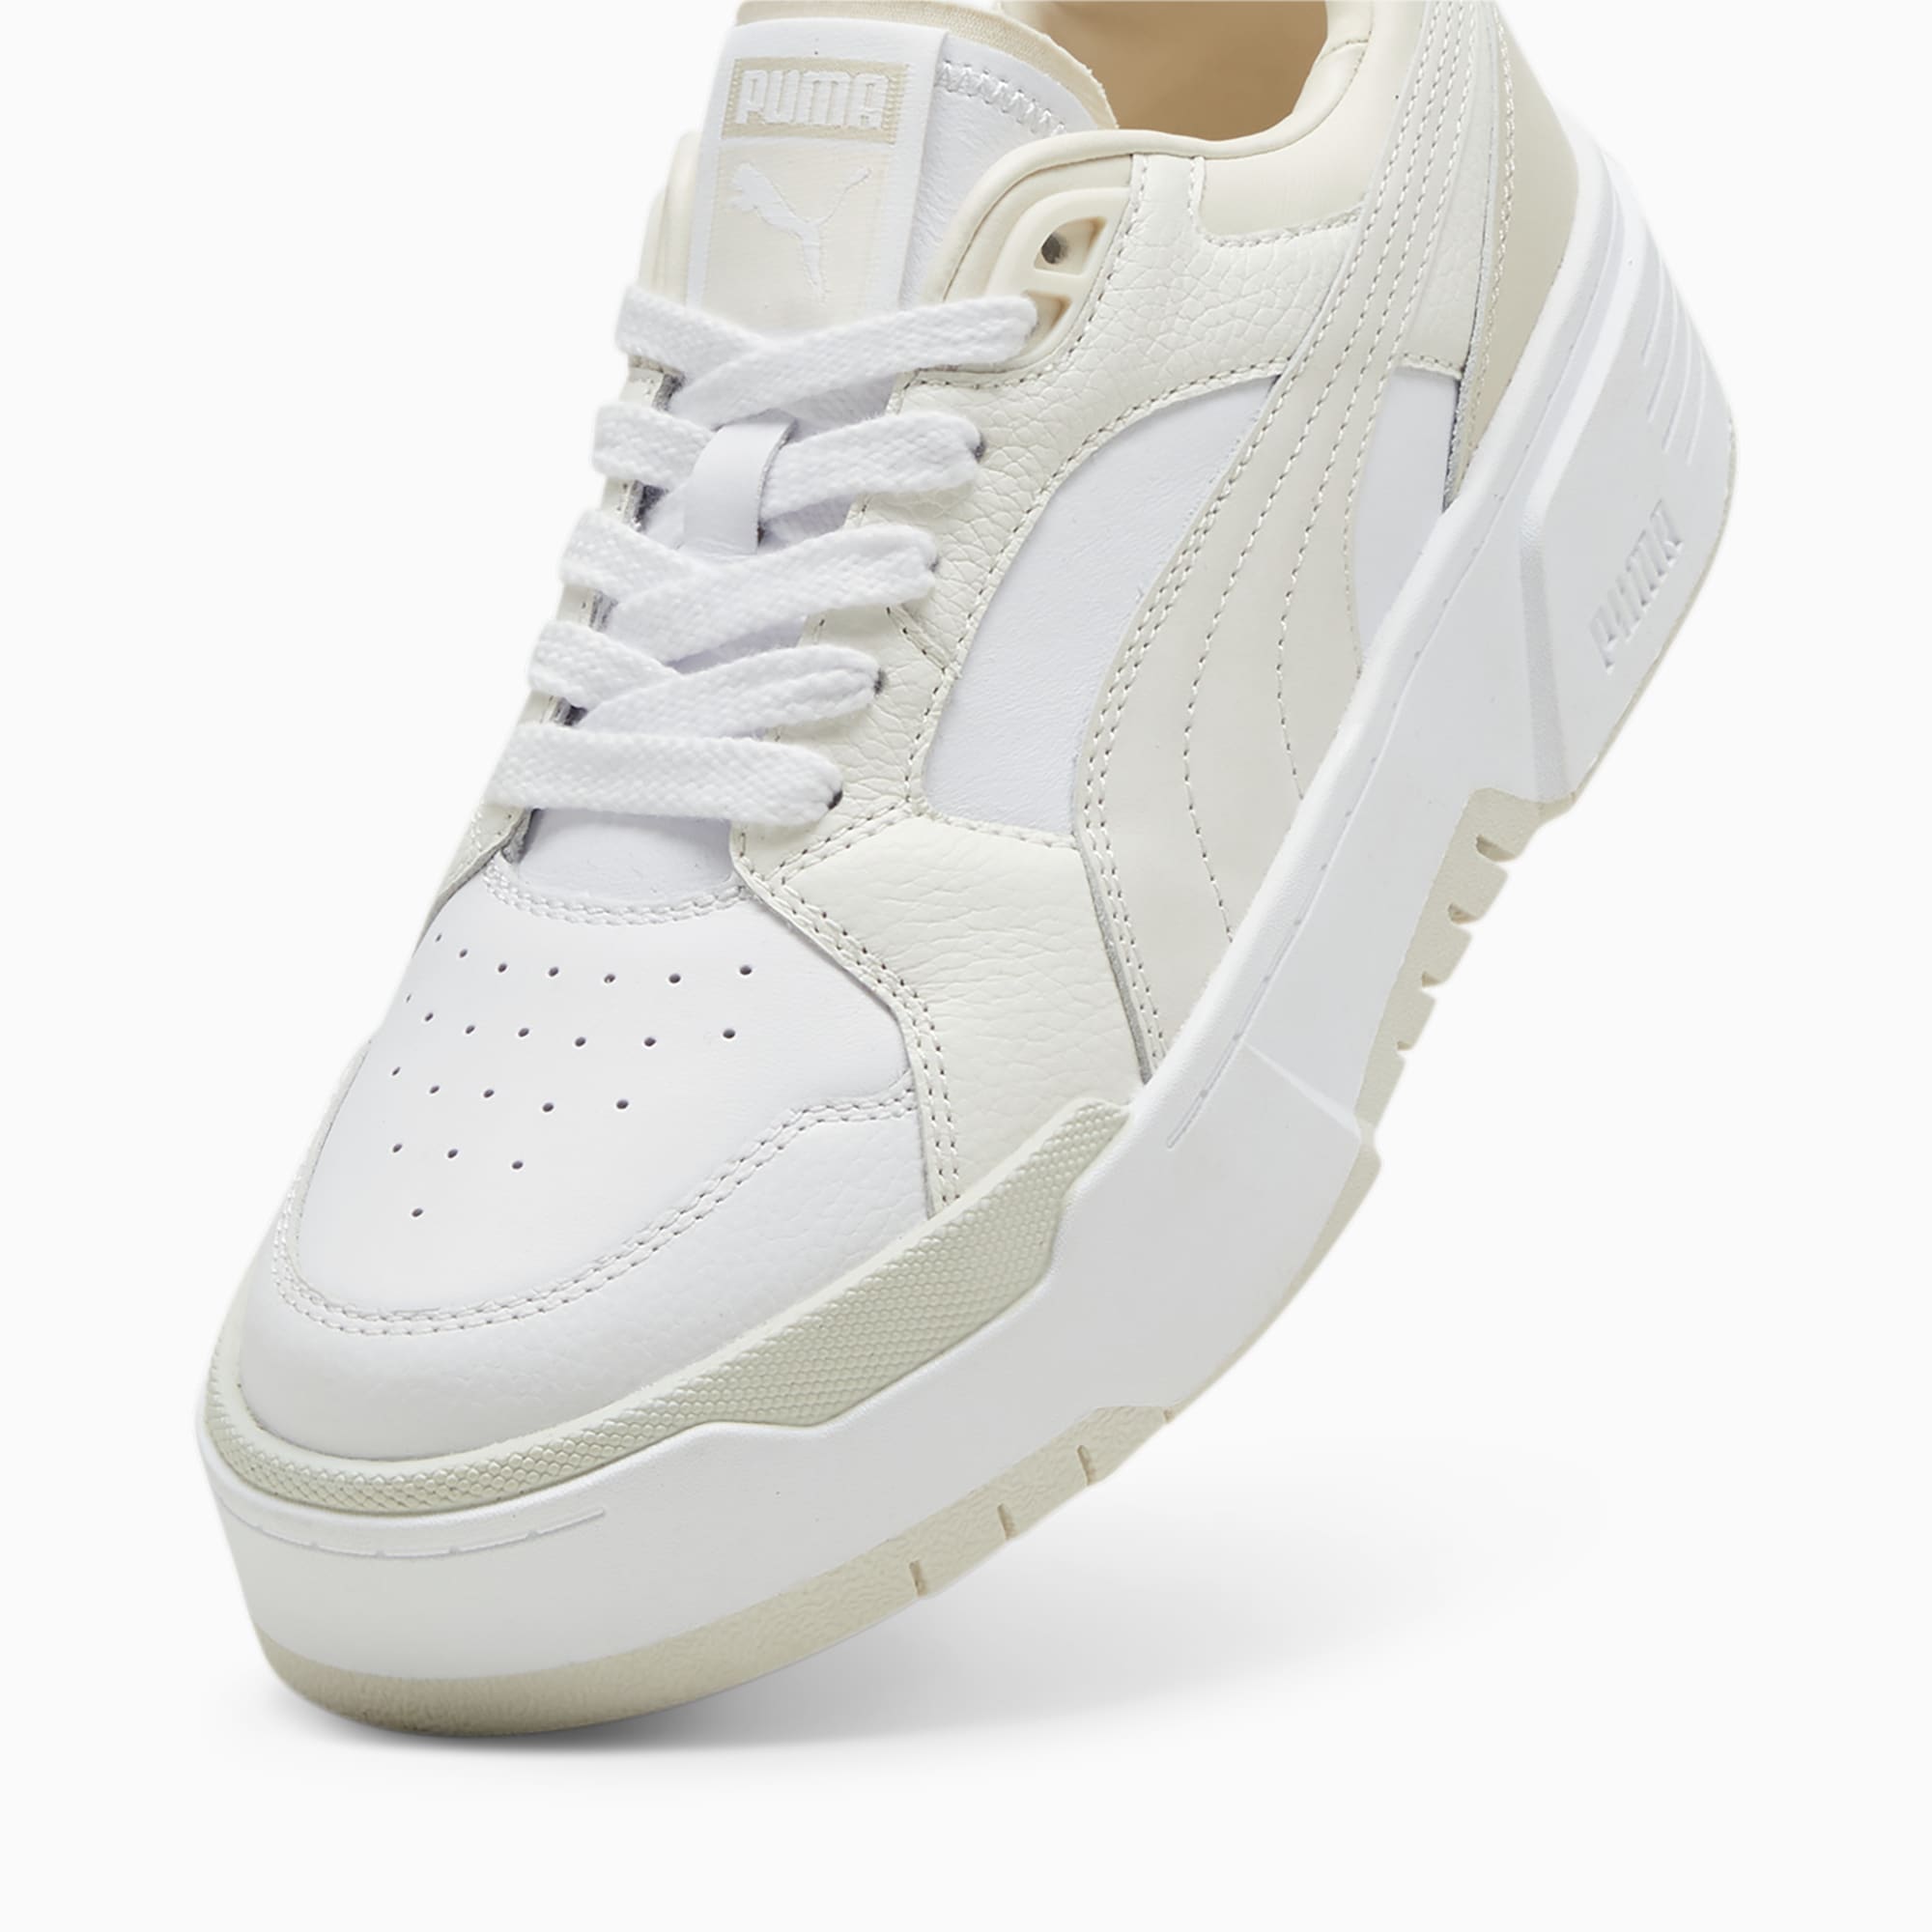 PUMA Ca. Flyz Prm Women's Sneakers, White/Warm White, Size 35,5, Shoes